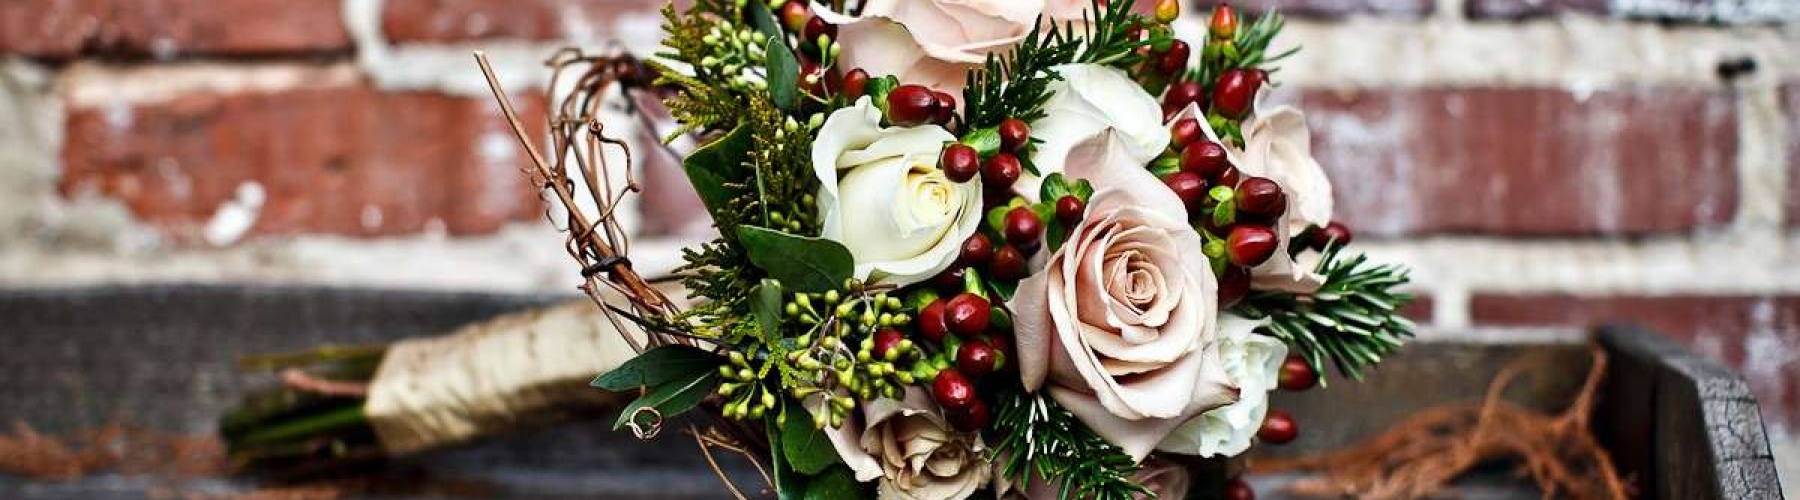 bouquet-per-matrimonio-in-inverno-con-fiori-misti